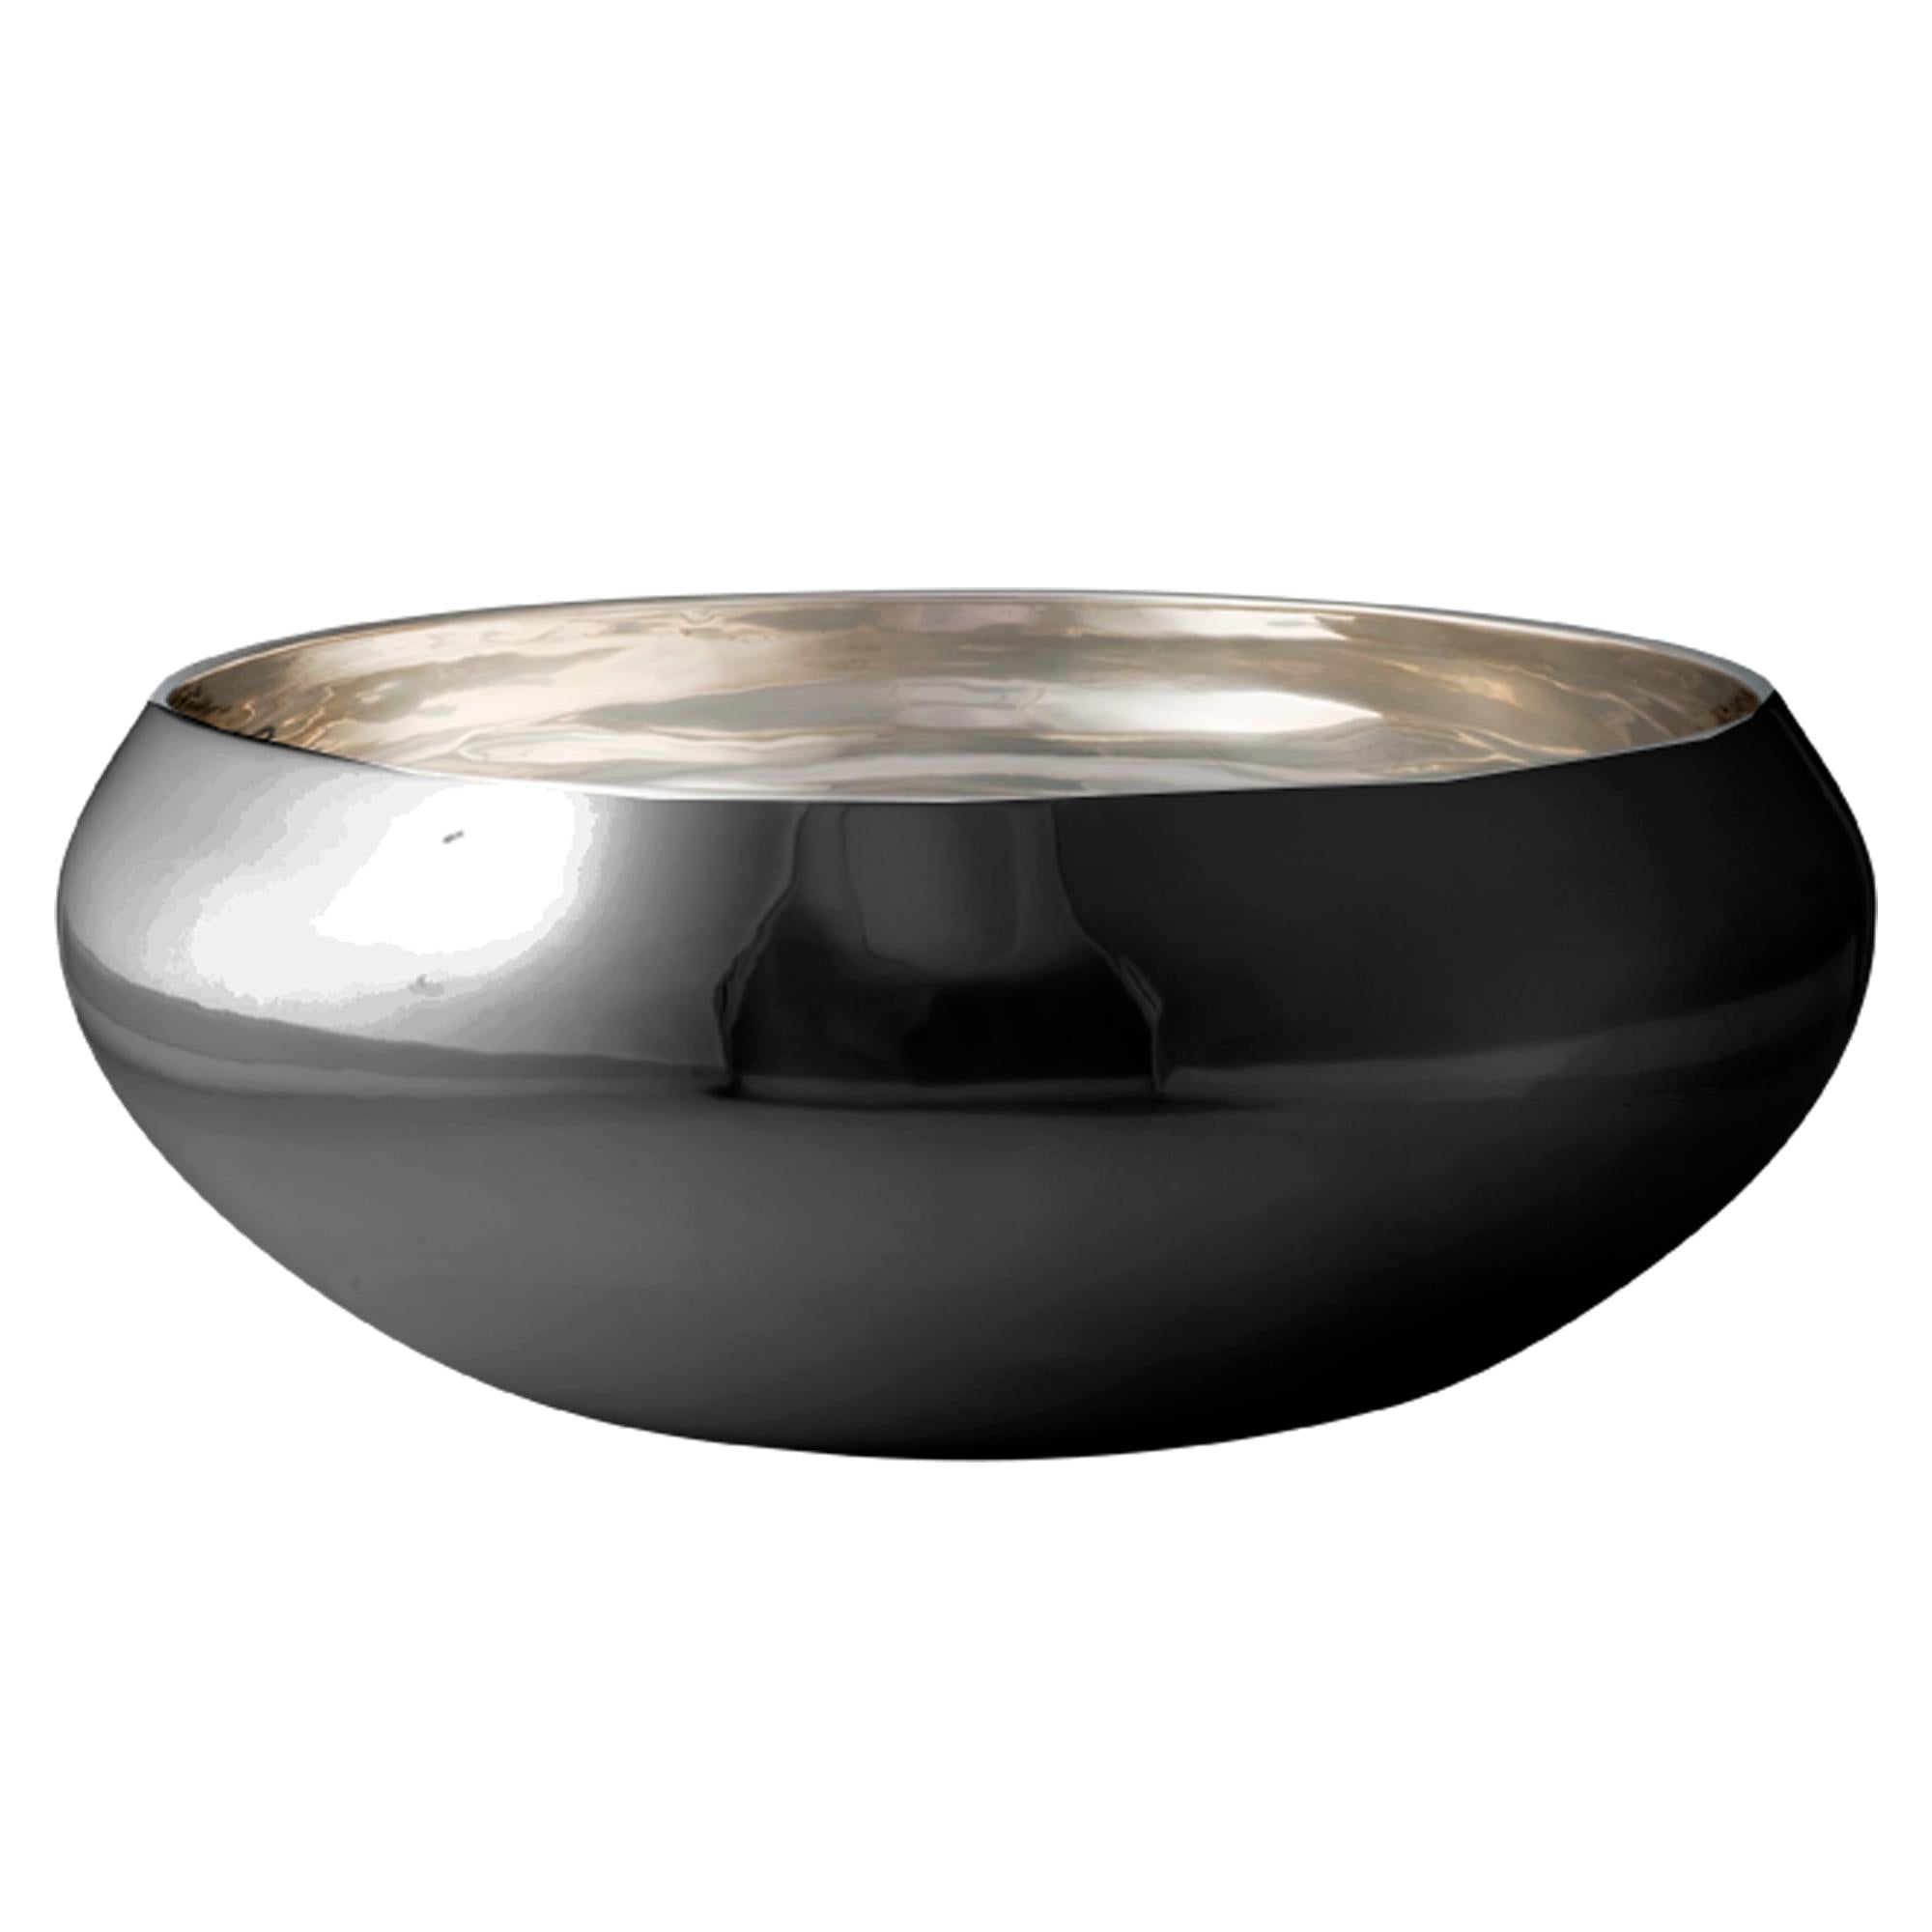 Kay BoJesen Nest Bowl wykonana z czarnej stali, duża